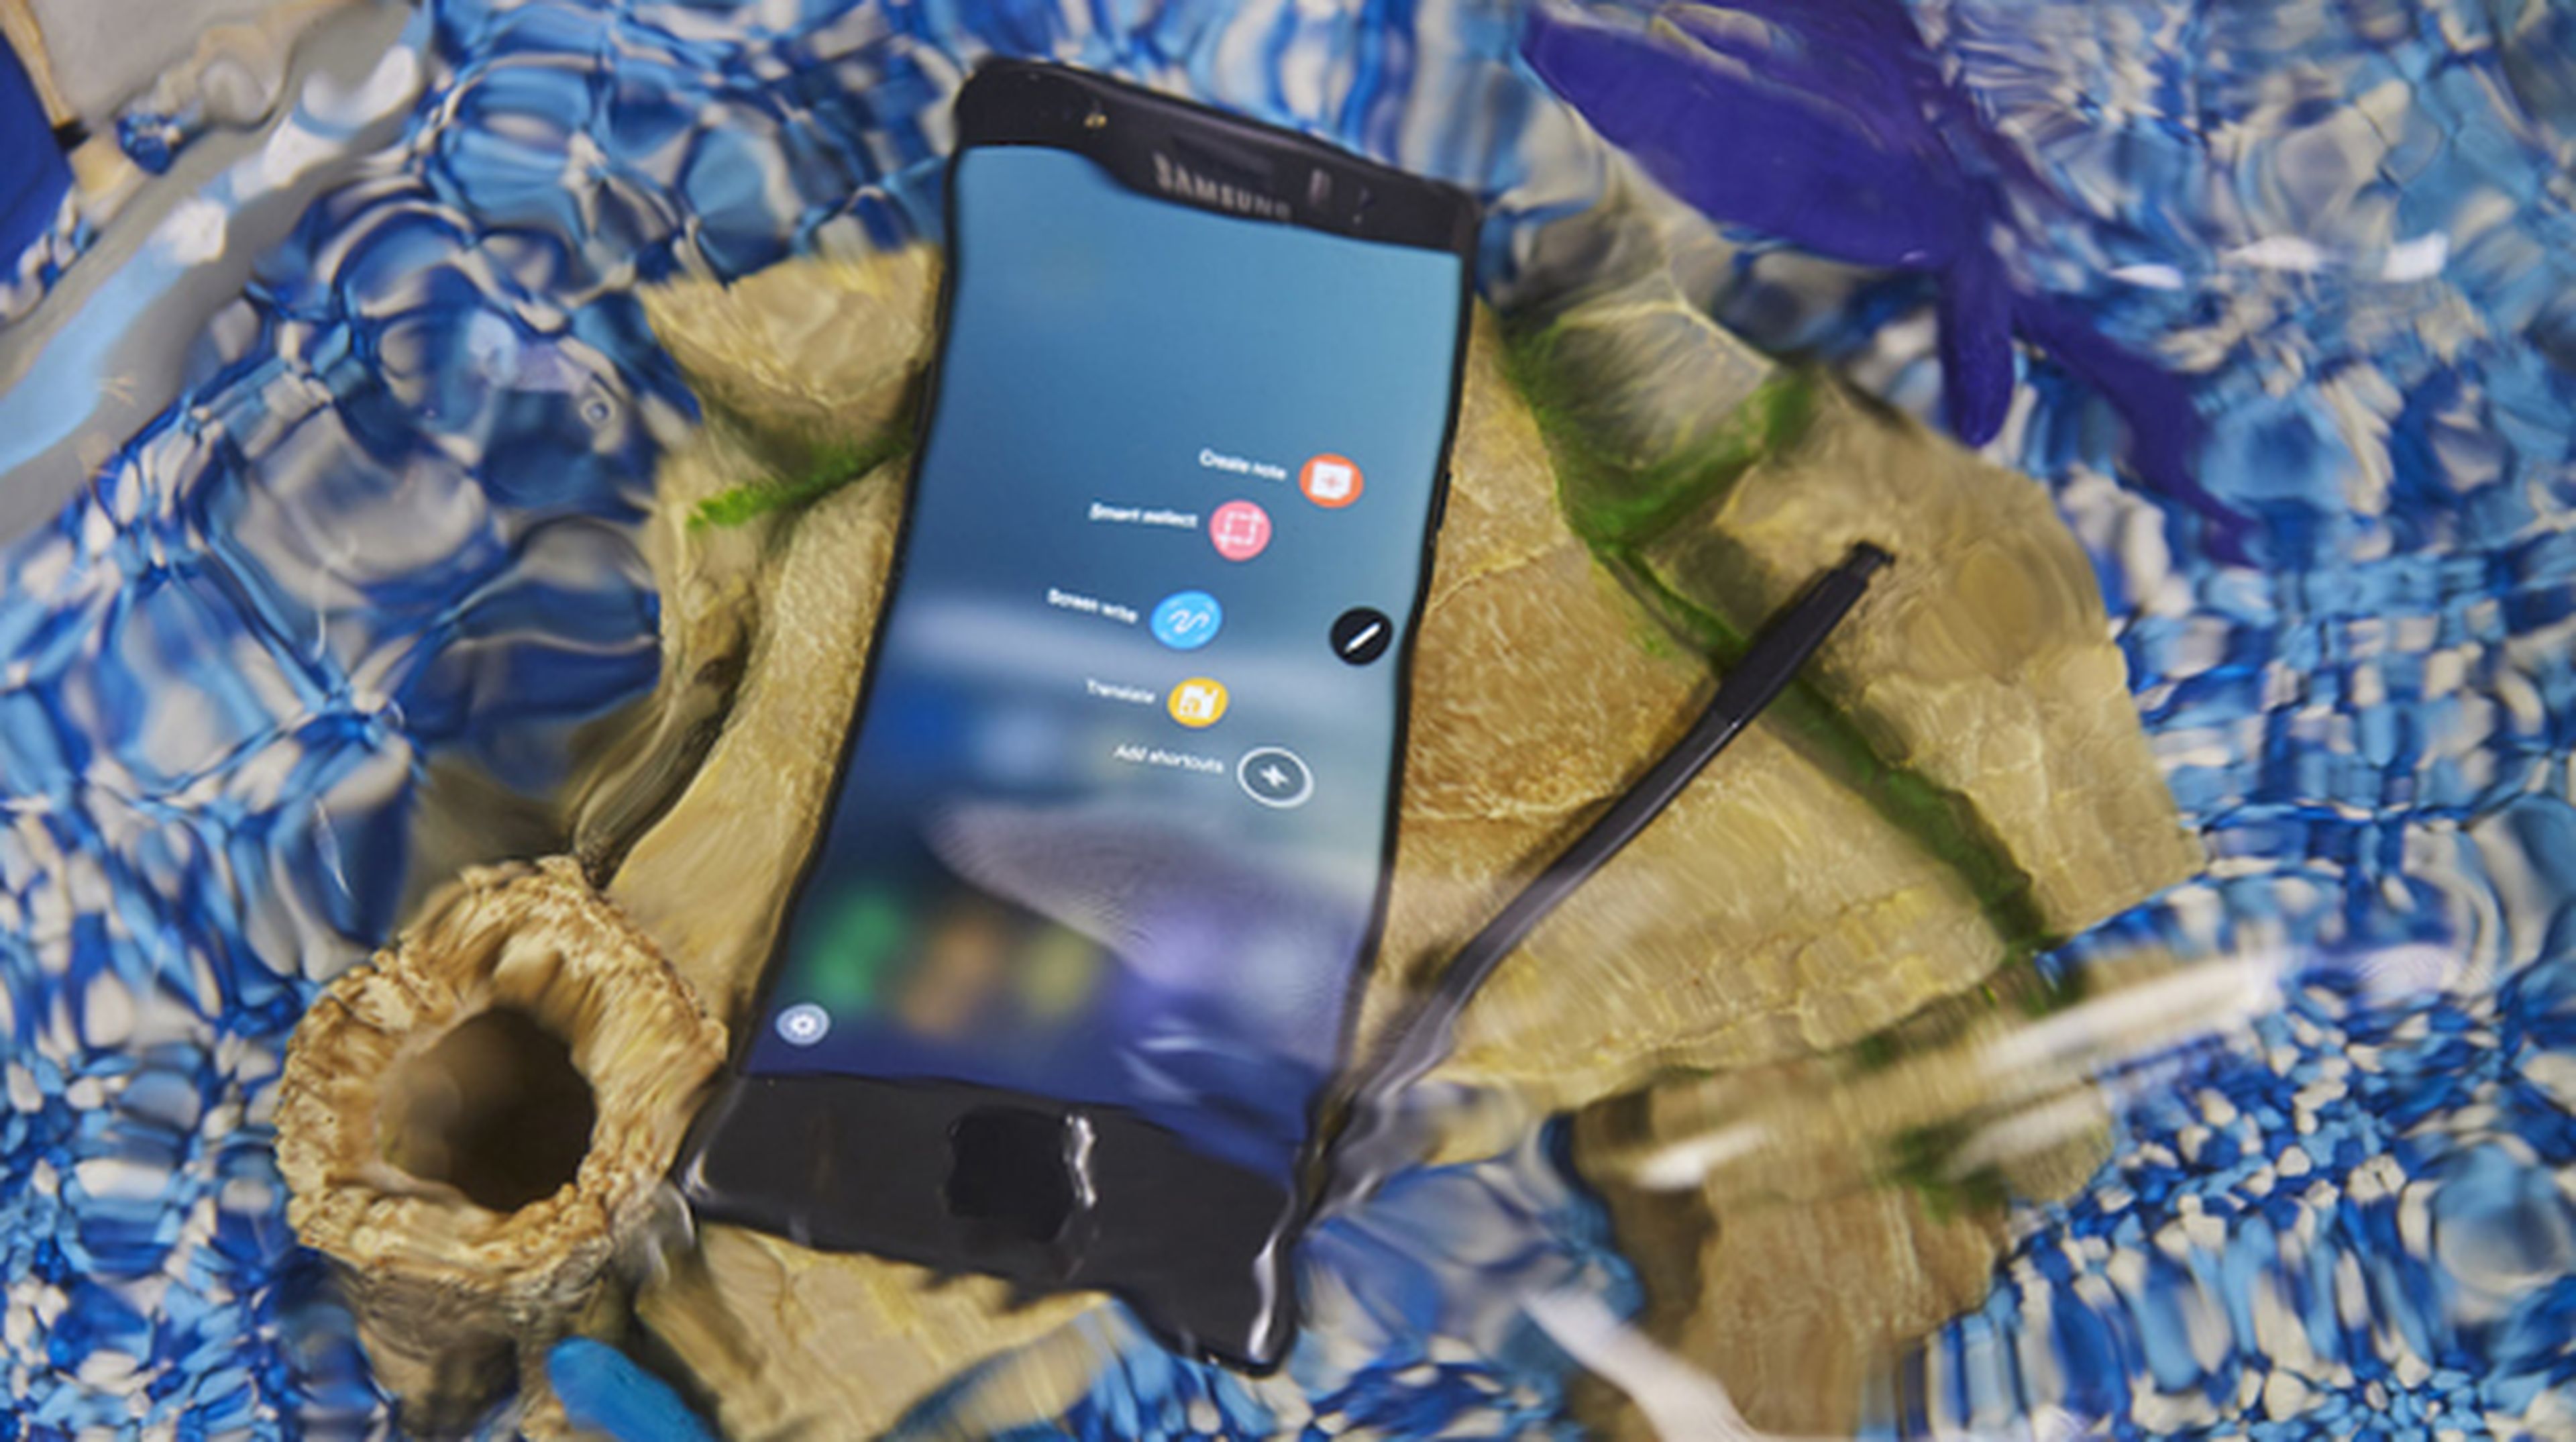 Galaxy Note 7 resistente al agua